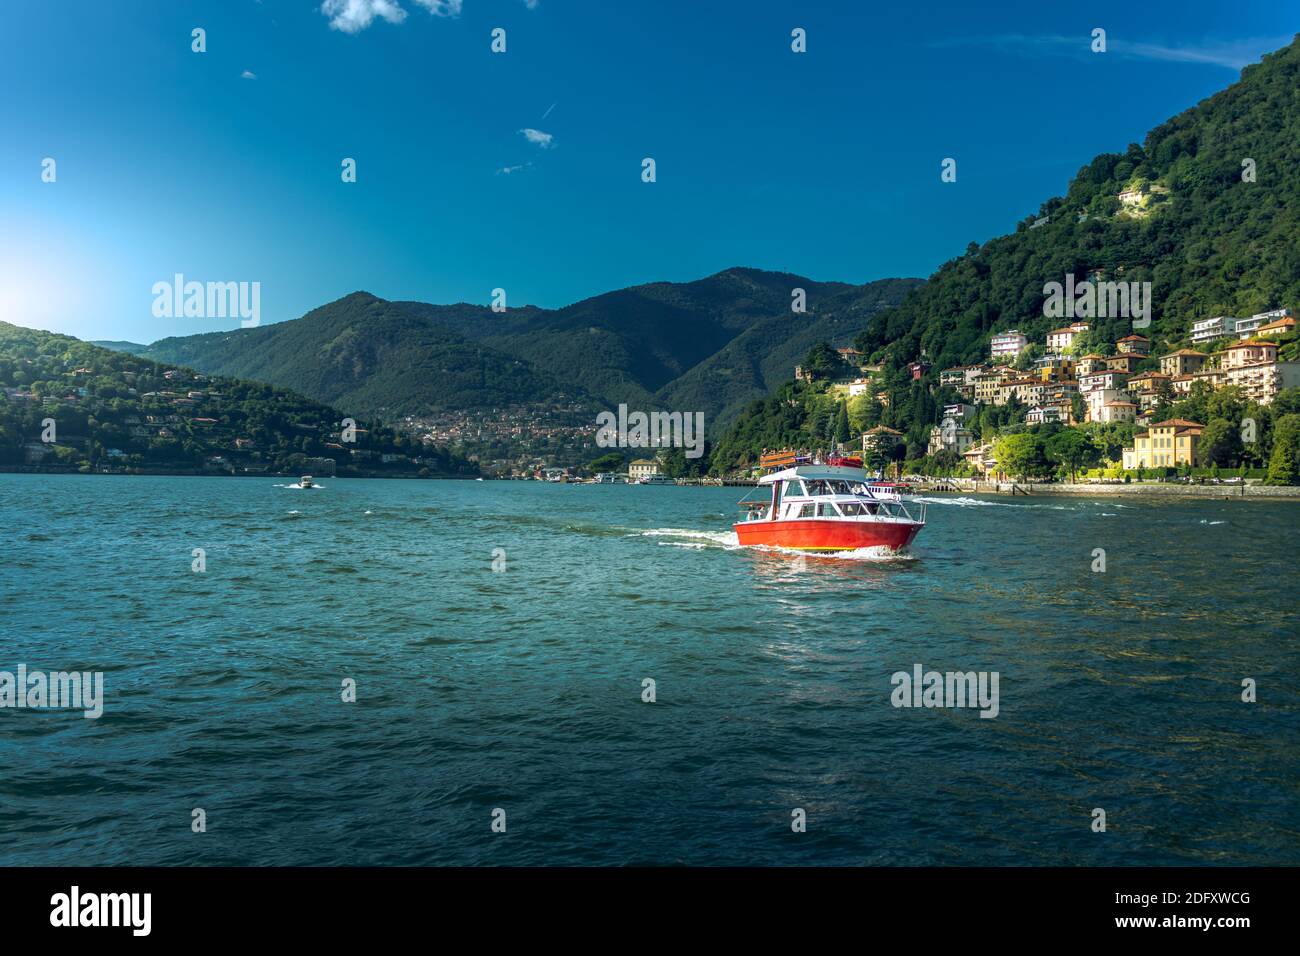 Lac de Côme dans la ville de Côme, Lombardie, Italie. Paysage pittoresque avec montagnes et bateau rouge naviguant sur l'eau Banque D'Images